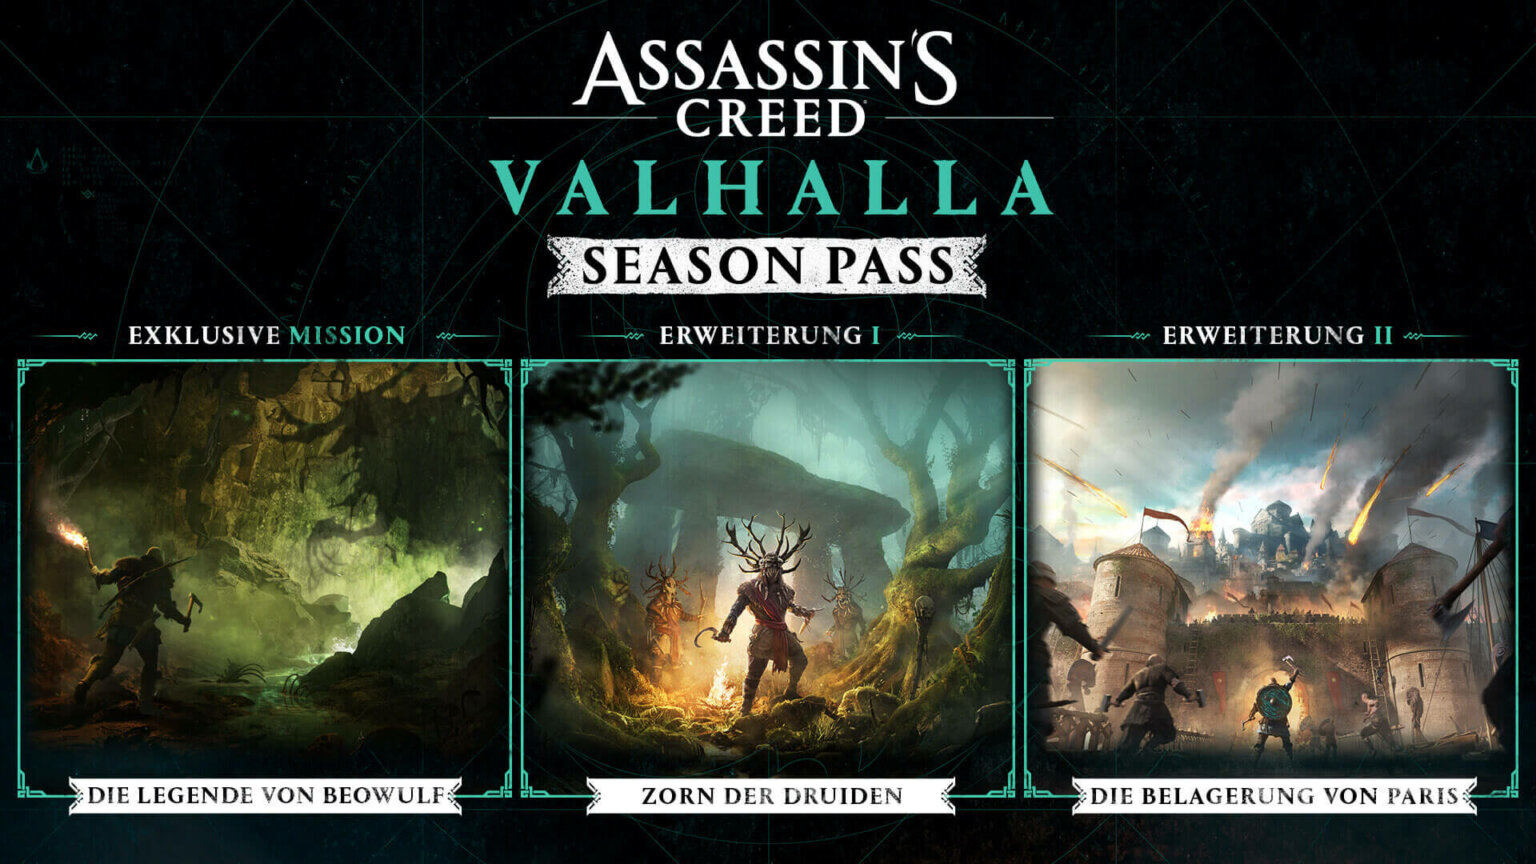 assassins creed valhalla season pass und post launch inhalte enthüllt